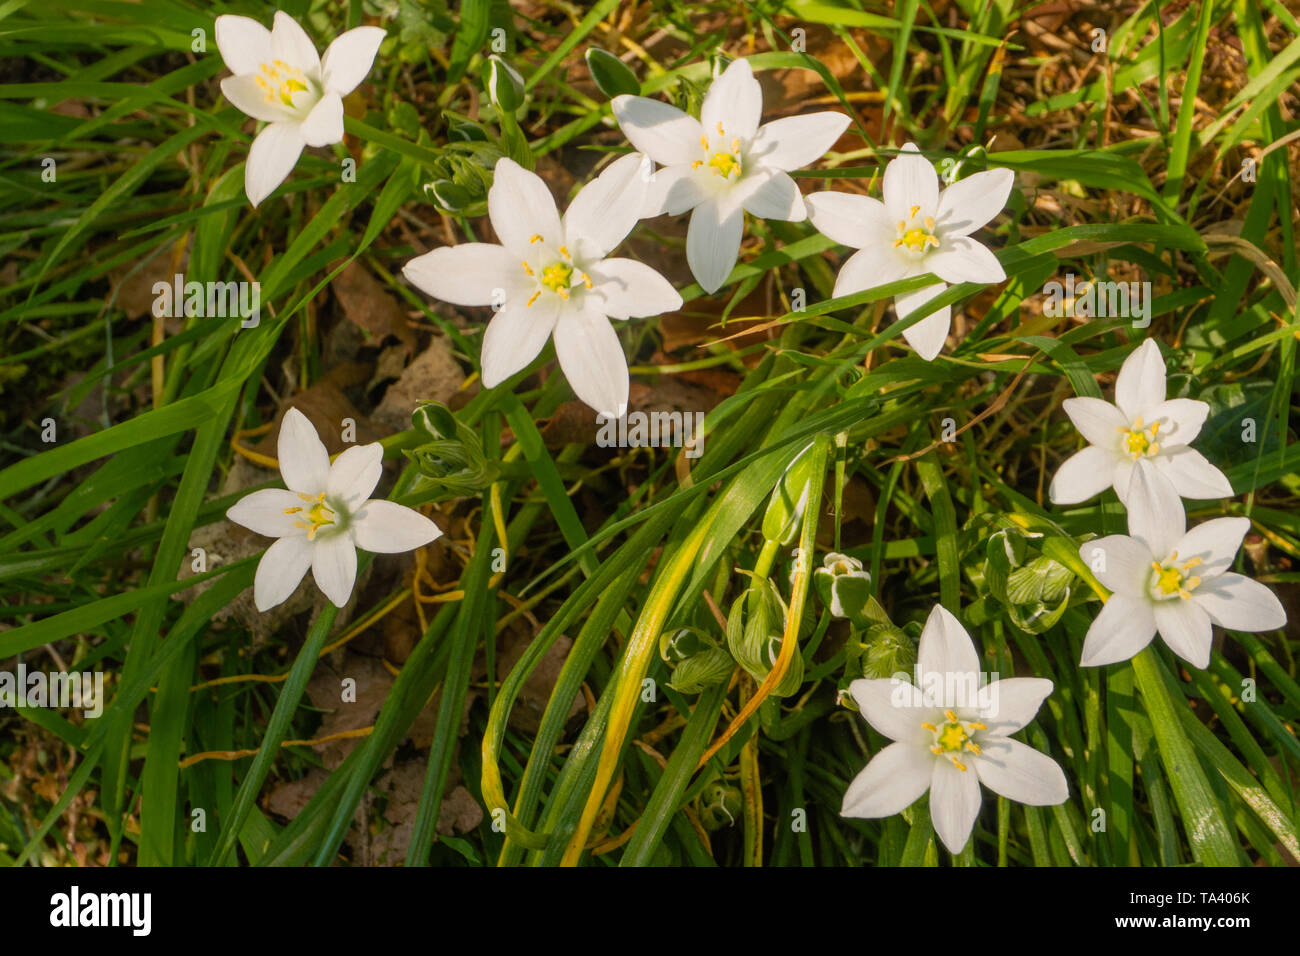 the star-shaped white flowers of Star-of-Bethlehem(Ornithogalum) Stock Photo